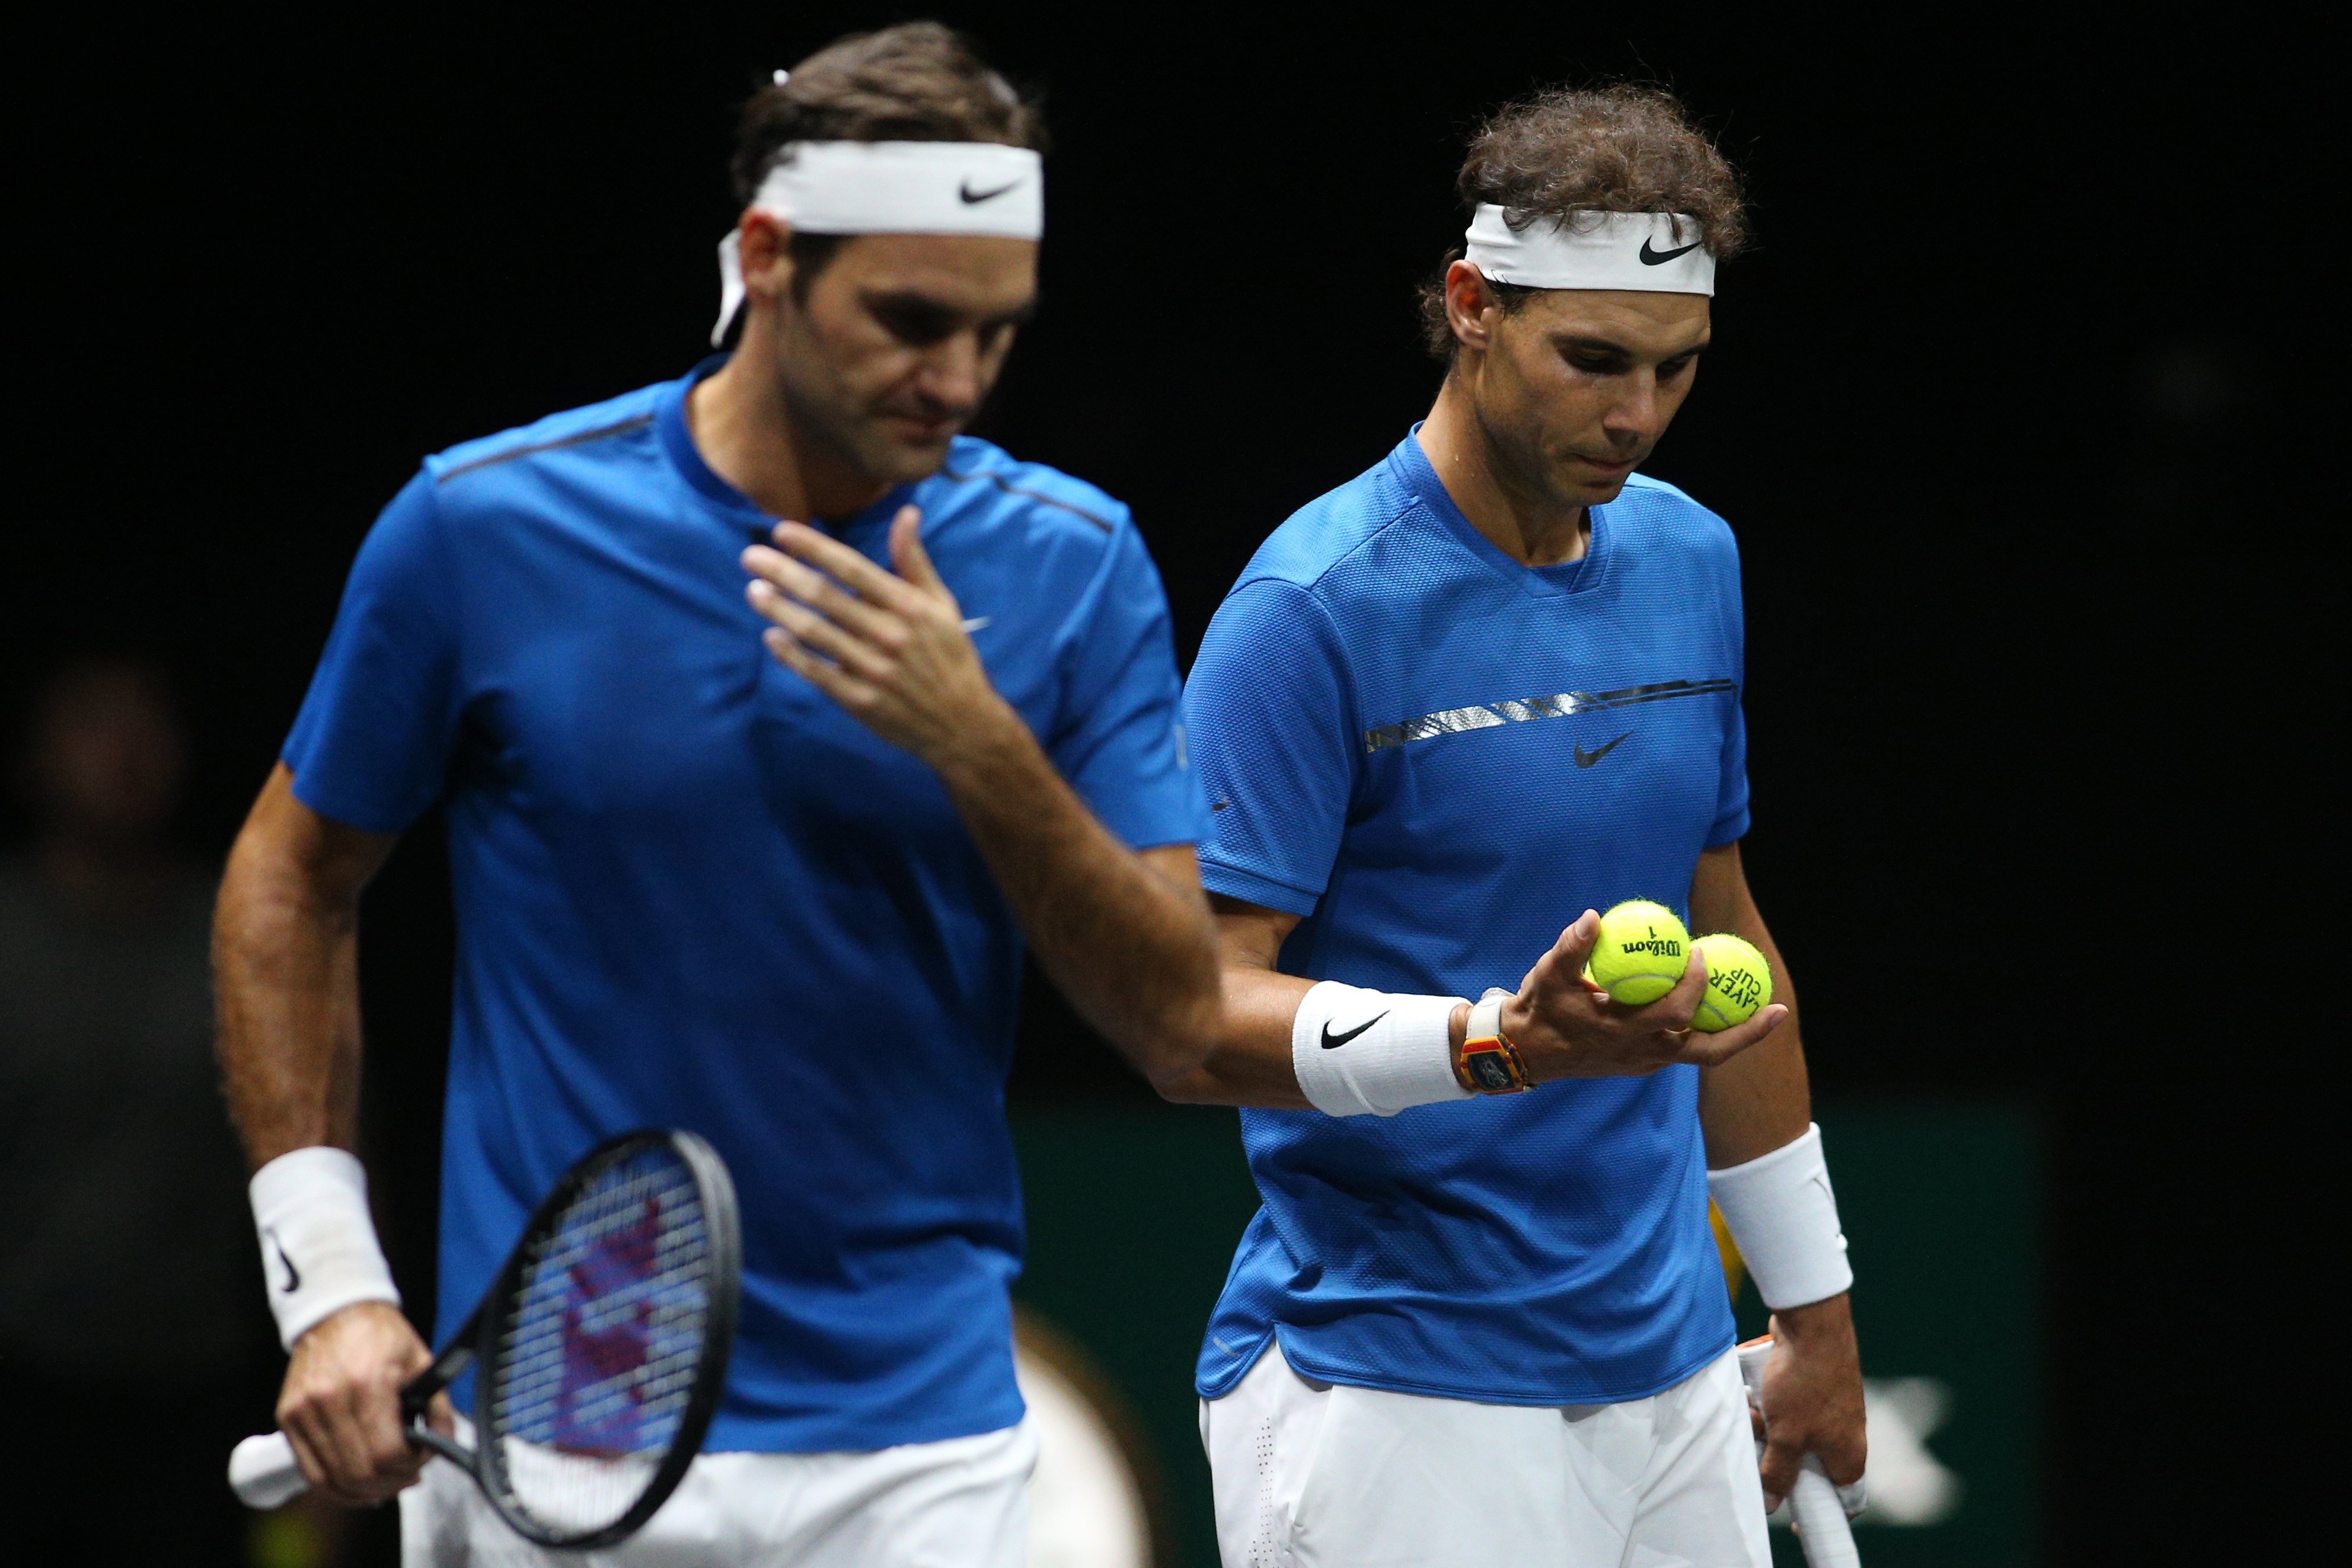 El suizo Roger Federer considera un gran amigo al tenista español Rafael Nadal.